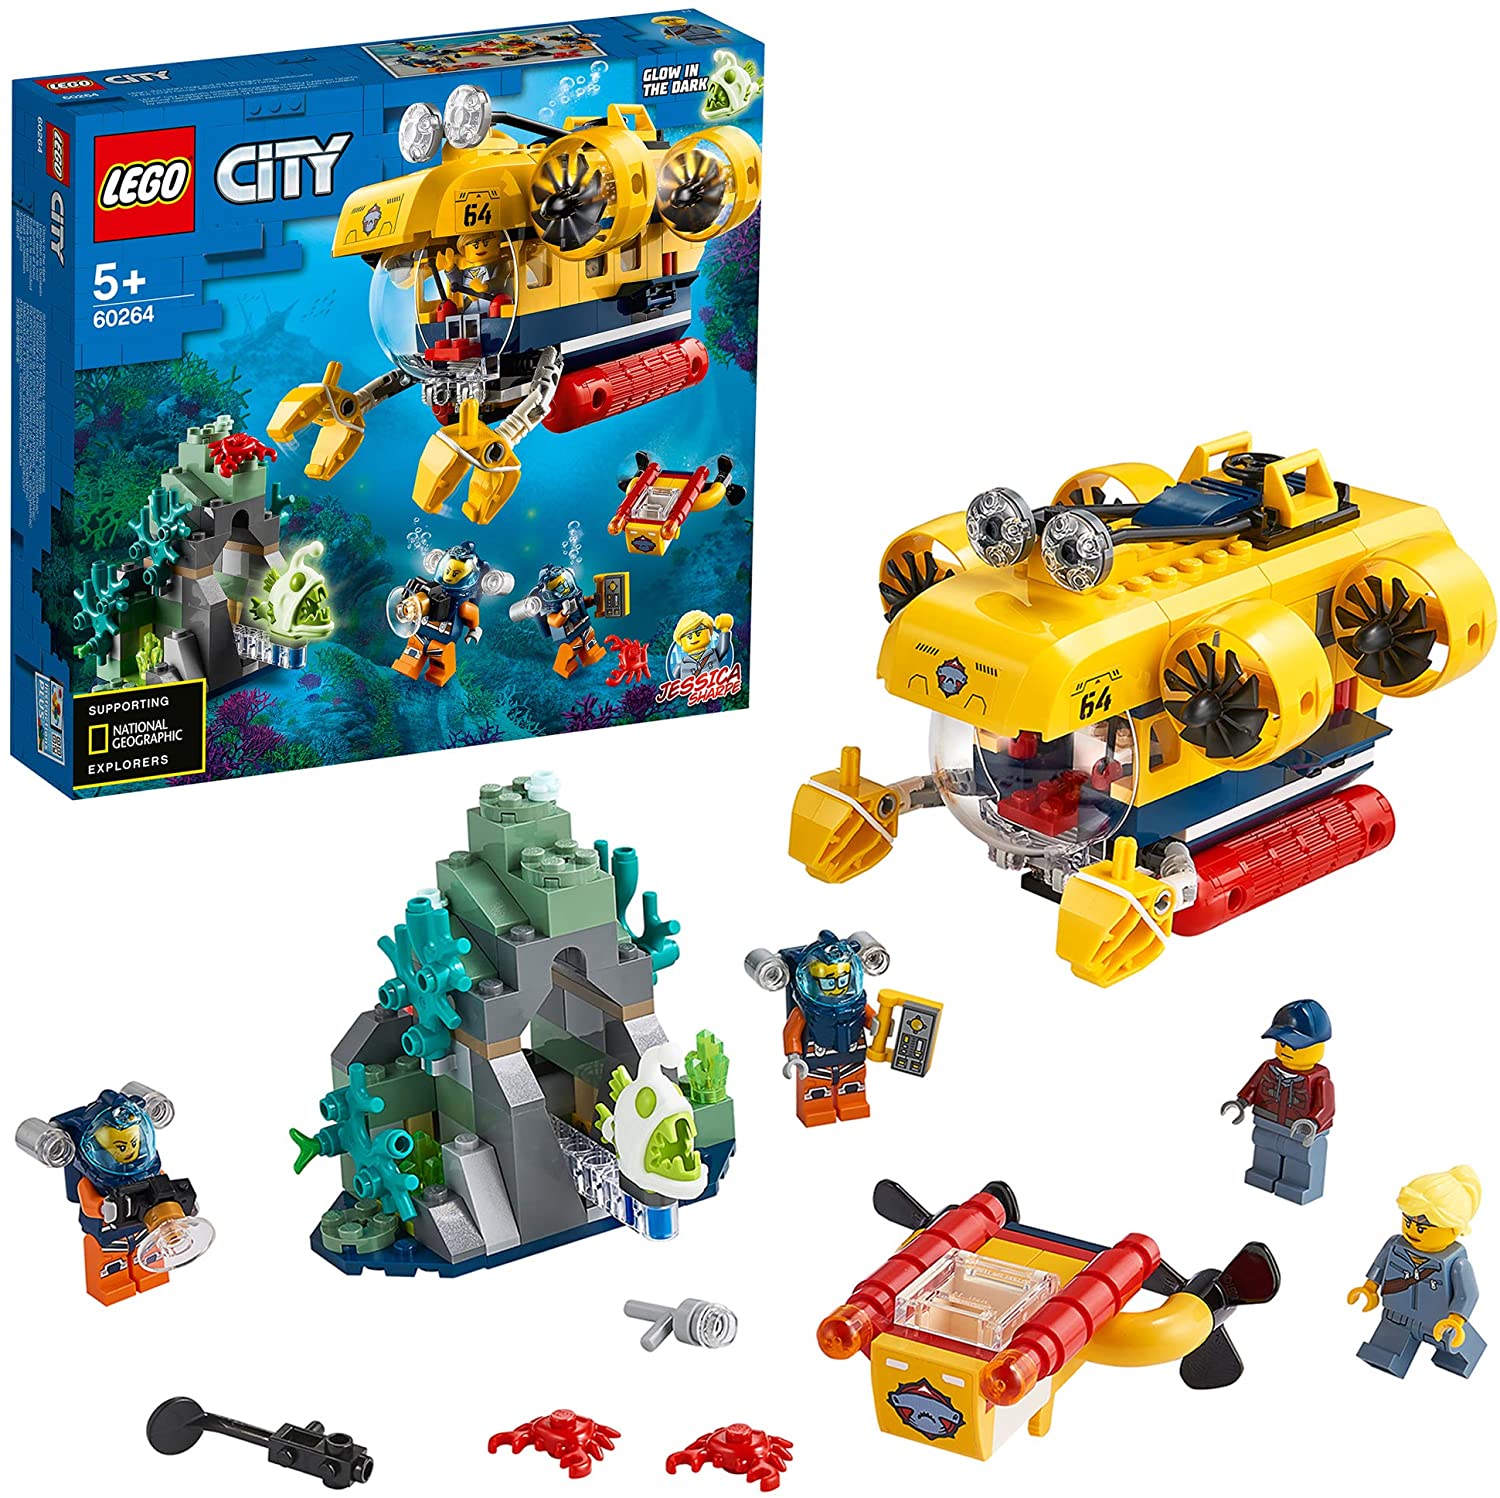 LEGO City Oceans Sottomarino da Esplorazione Oceanica, Playset Avventure Acquatiche per i Bambini, 60264